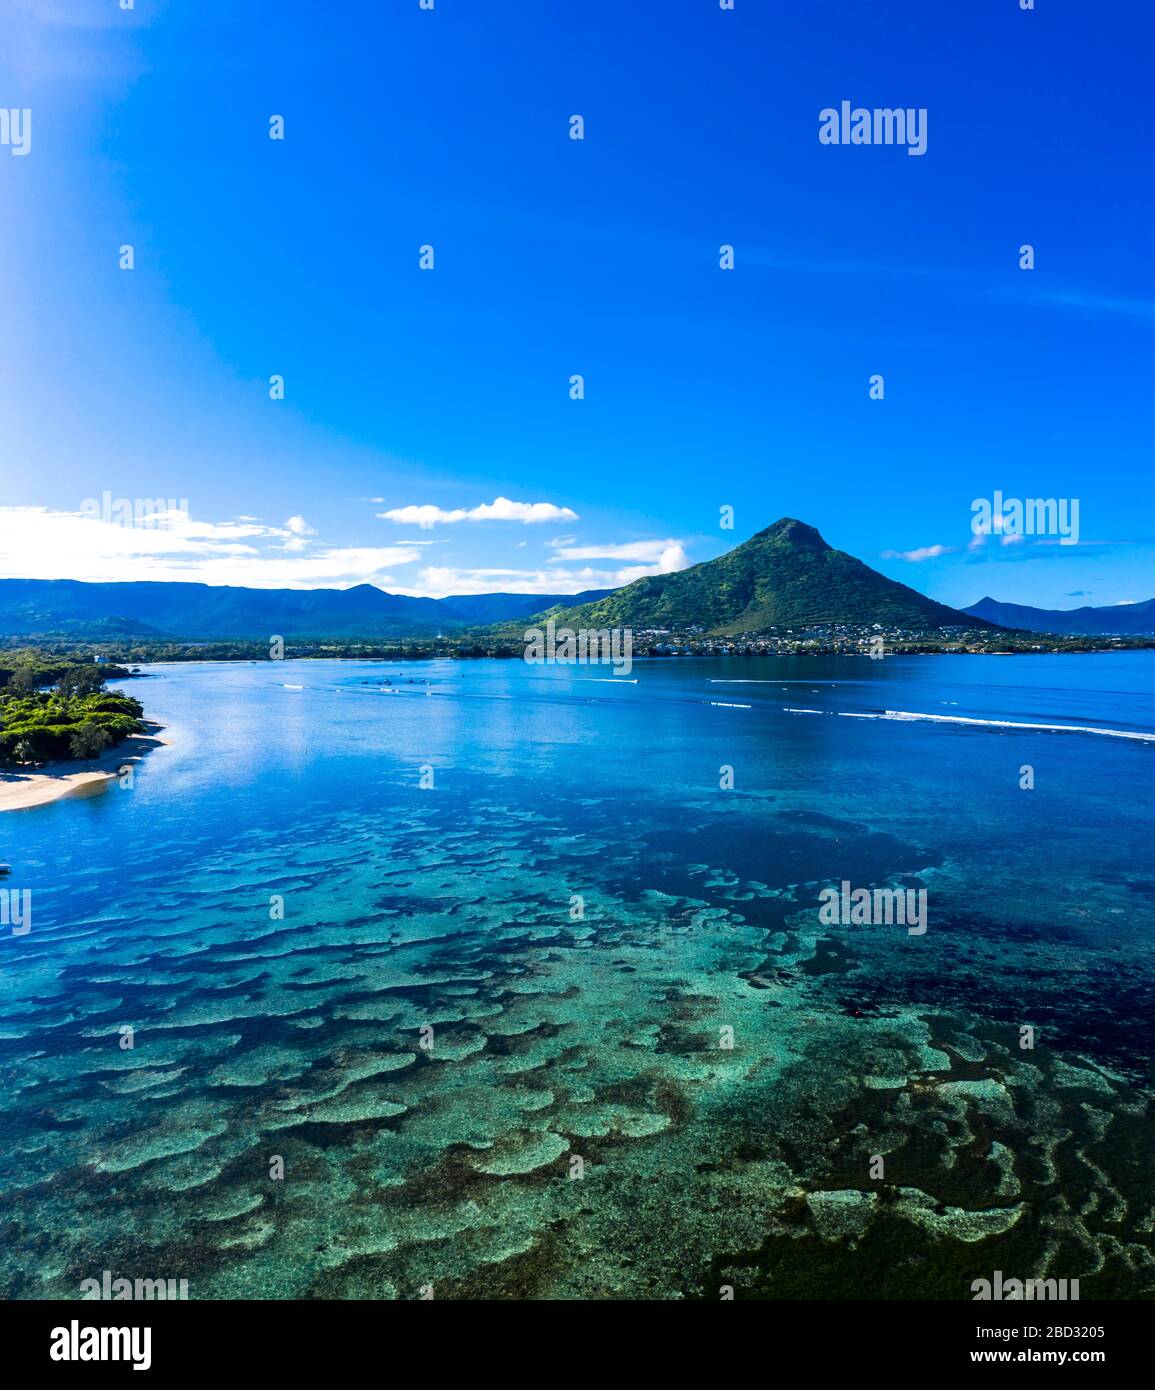 Vue aérienne, côte avec eau claire, derrière la montagne tourelle du Tamarin, Flic en Flac, Maurice Banque D'Images